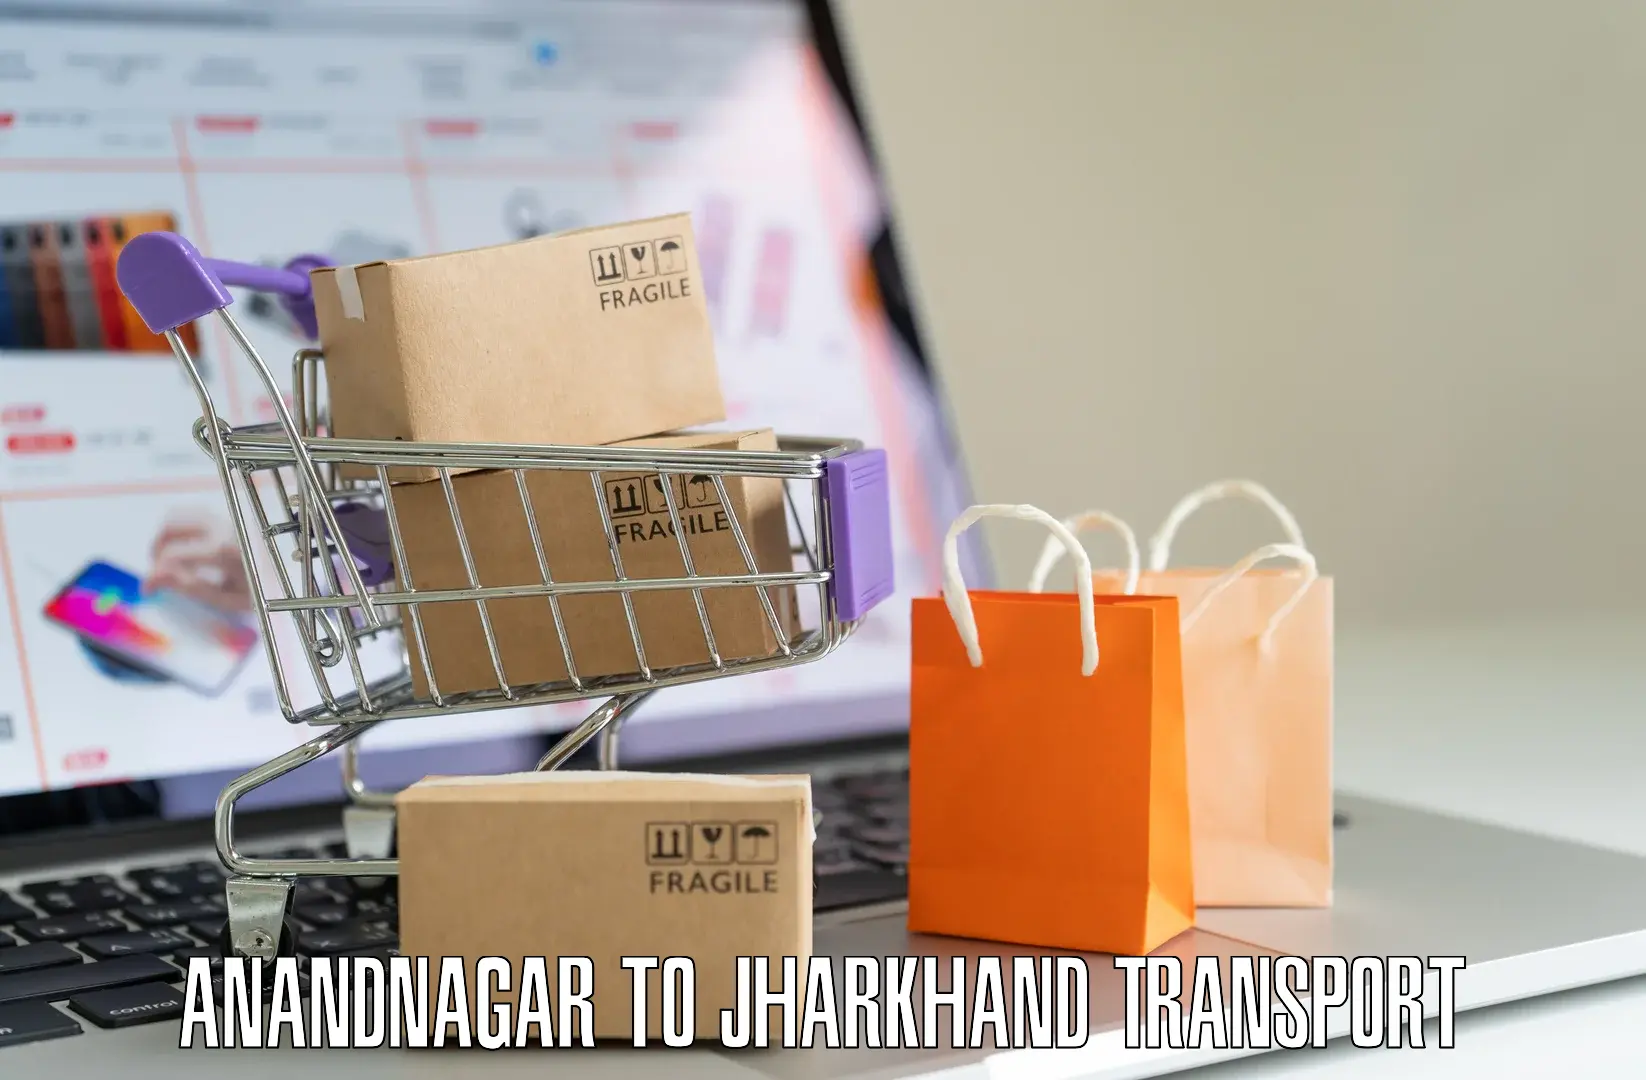 Nationwide transport services Anandnagar to Domchanch